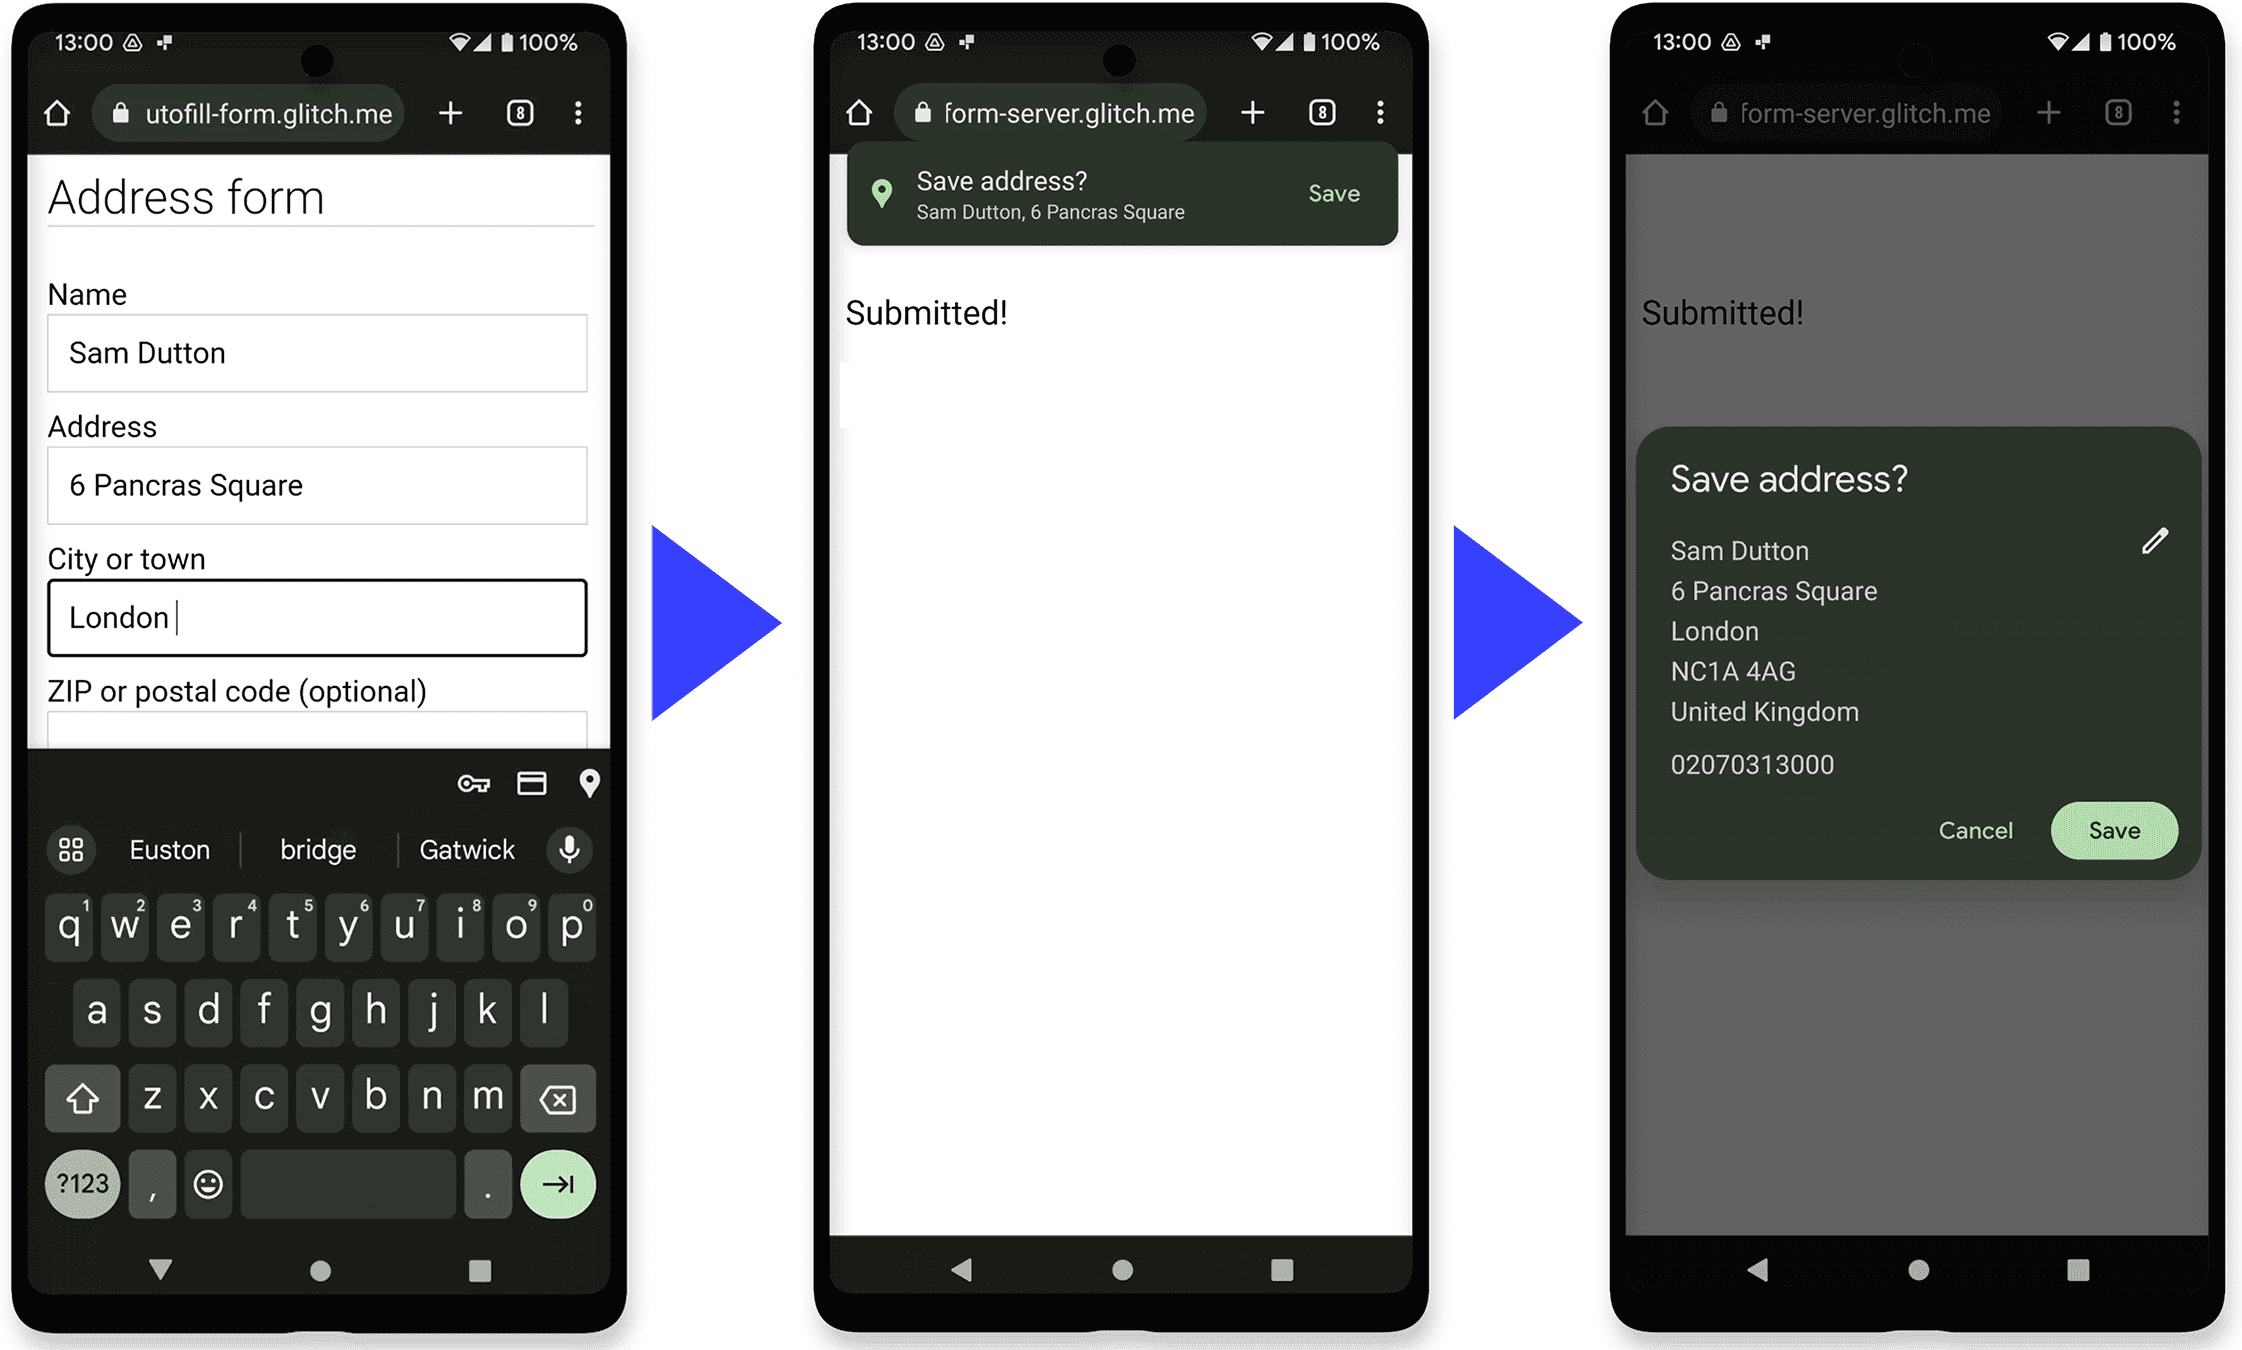 Android के तीन
स्क्रीनशॉट: Chrome में मौजूद पते का फ़ॉर्म, Chrome की ऑटोमैटिक भरने की सुविधा में, आपको पता सेव करने की सुविधा दी गई है. इसमें, नई ऑटोमैटिक भरने की सुविधा में बदलाव करने के लिए डायलॉग दिखाया गया है.